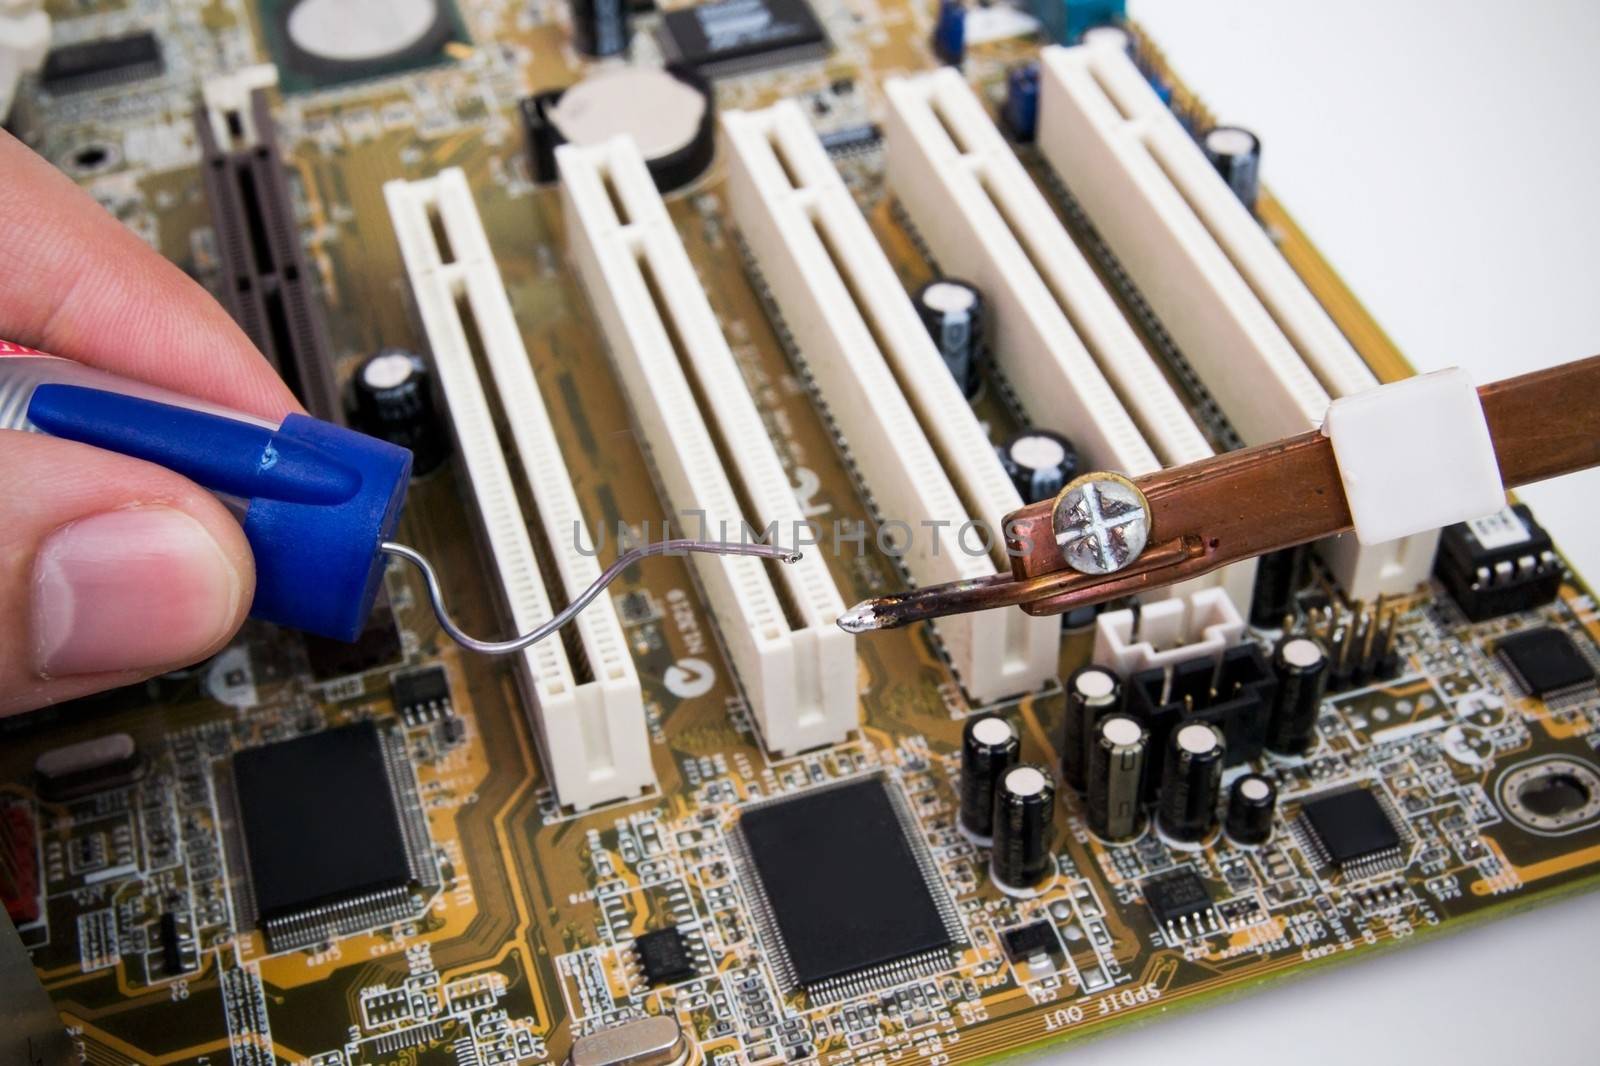 Repairing PC motherboard